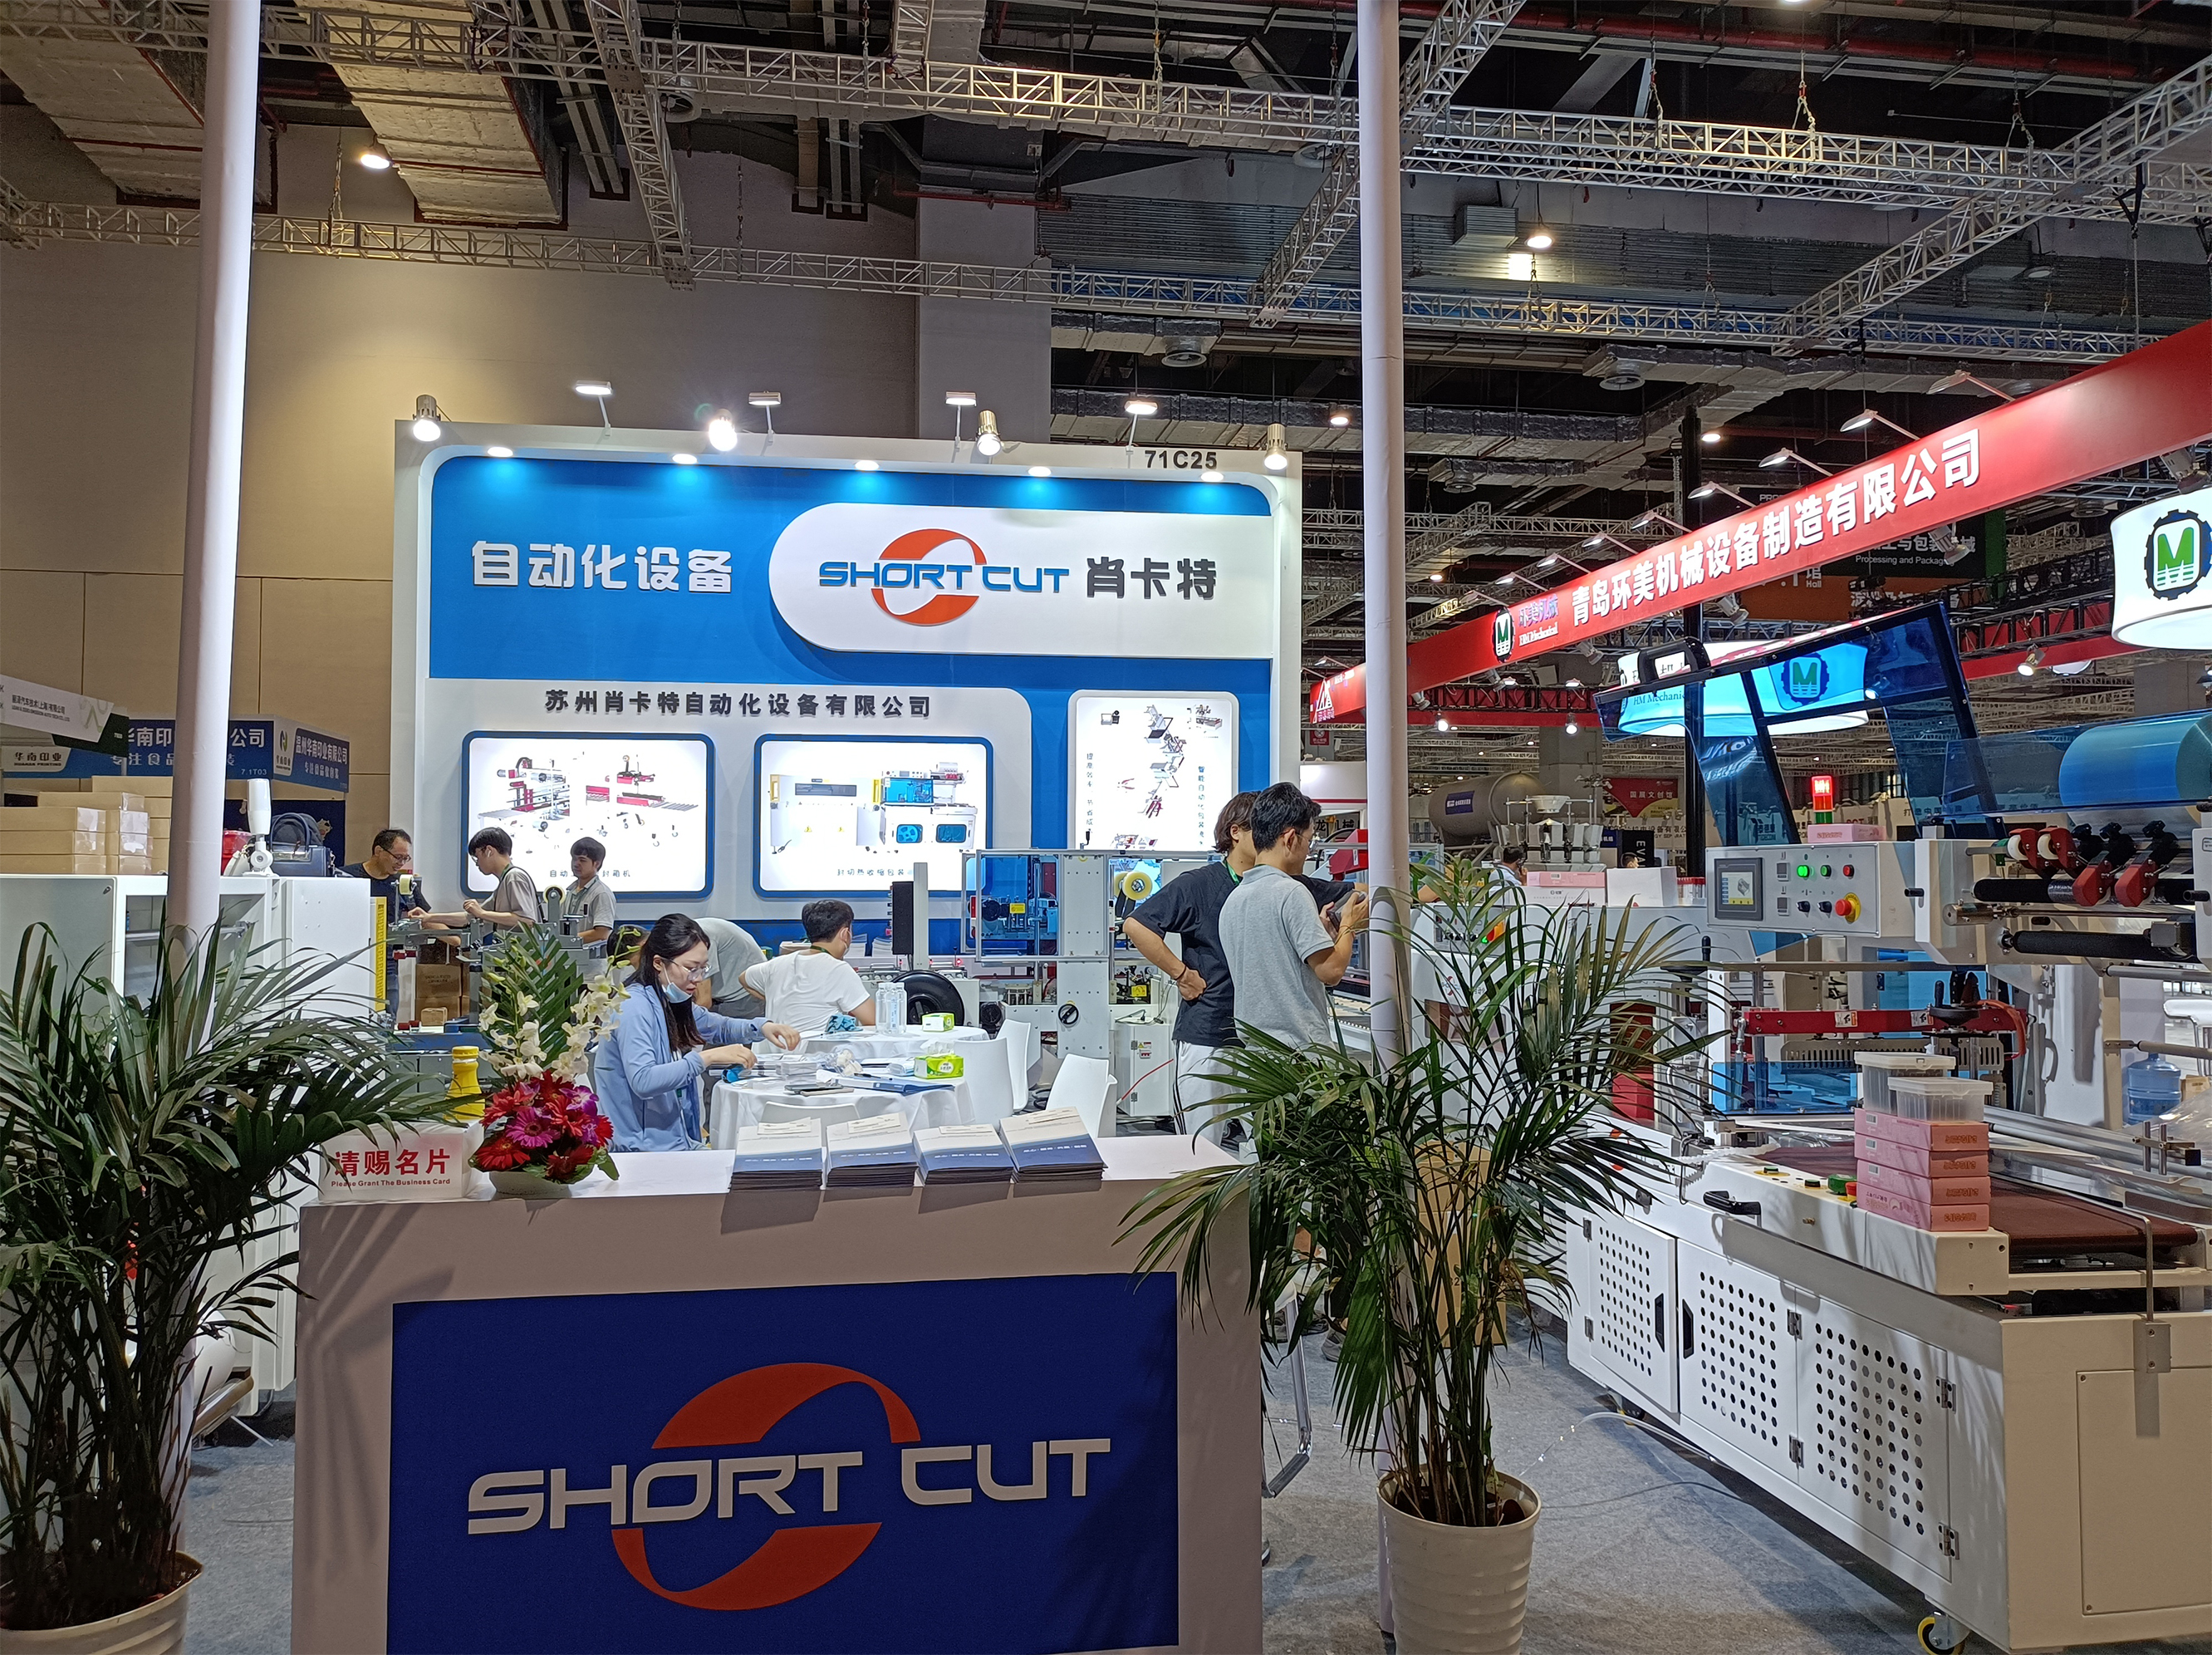 苏州fun88乐天堂自动化设备有限公司参加2020年上海包装机械展会